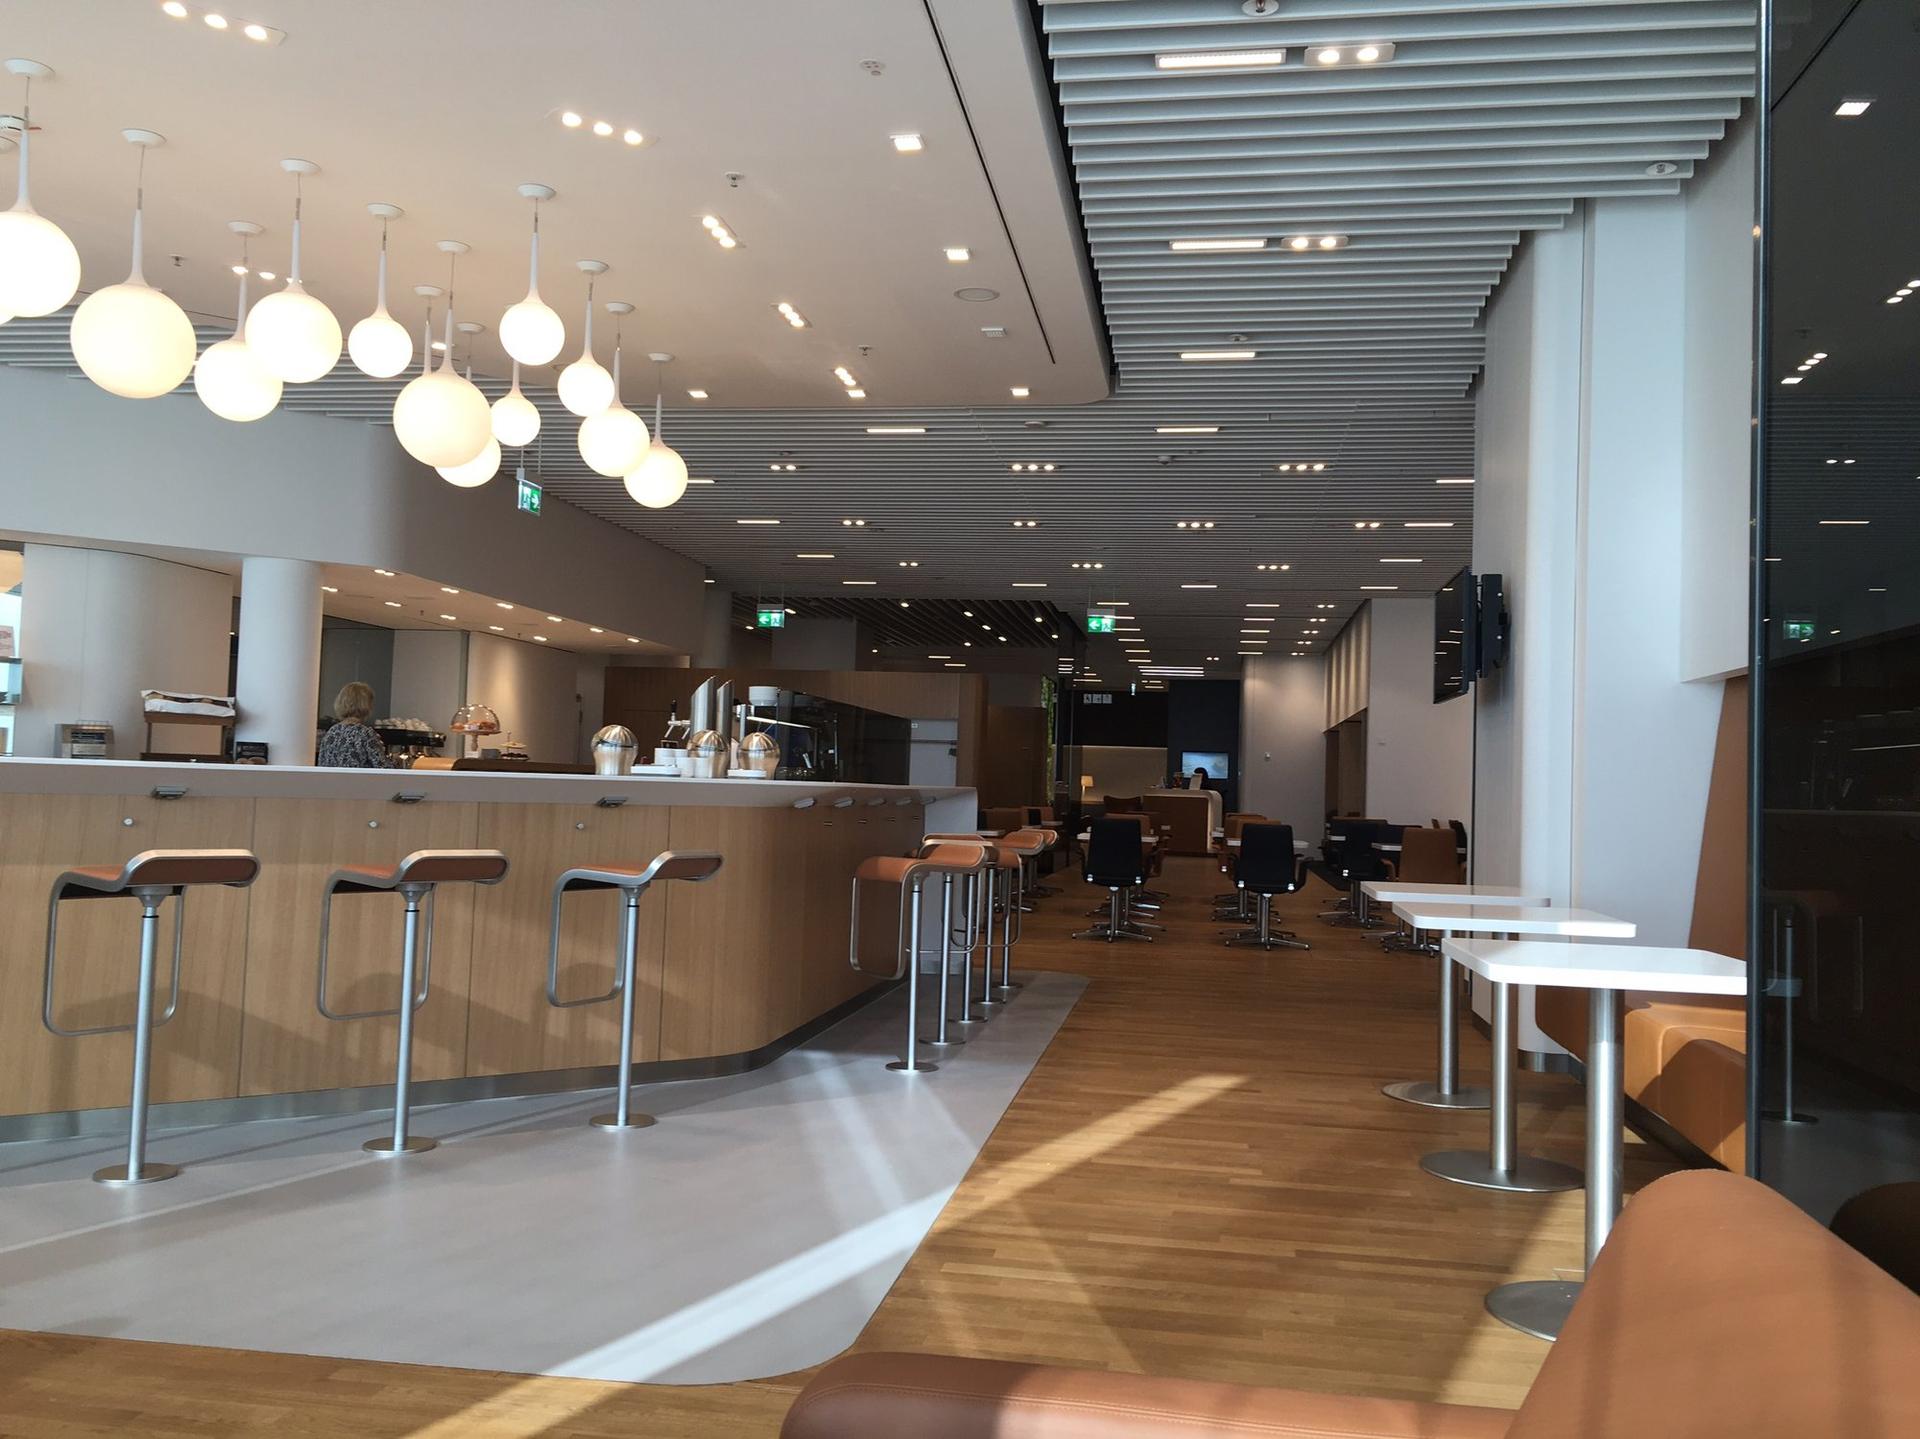 Lufthansa Senator Lounge (Schengen) image 4 of 7